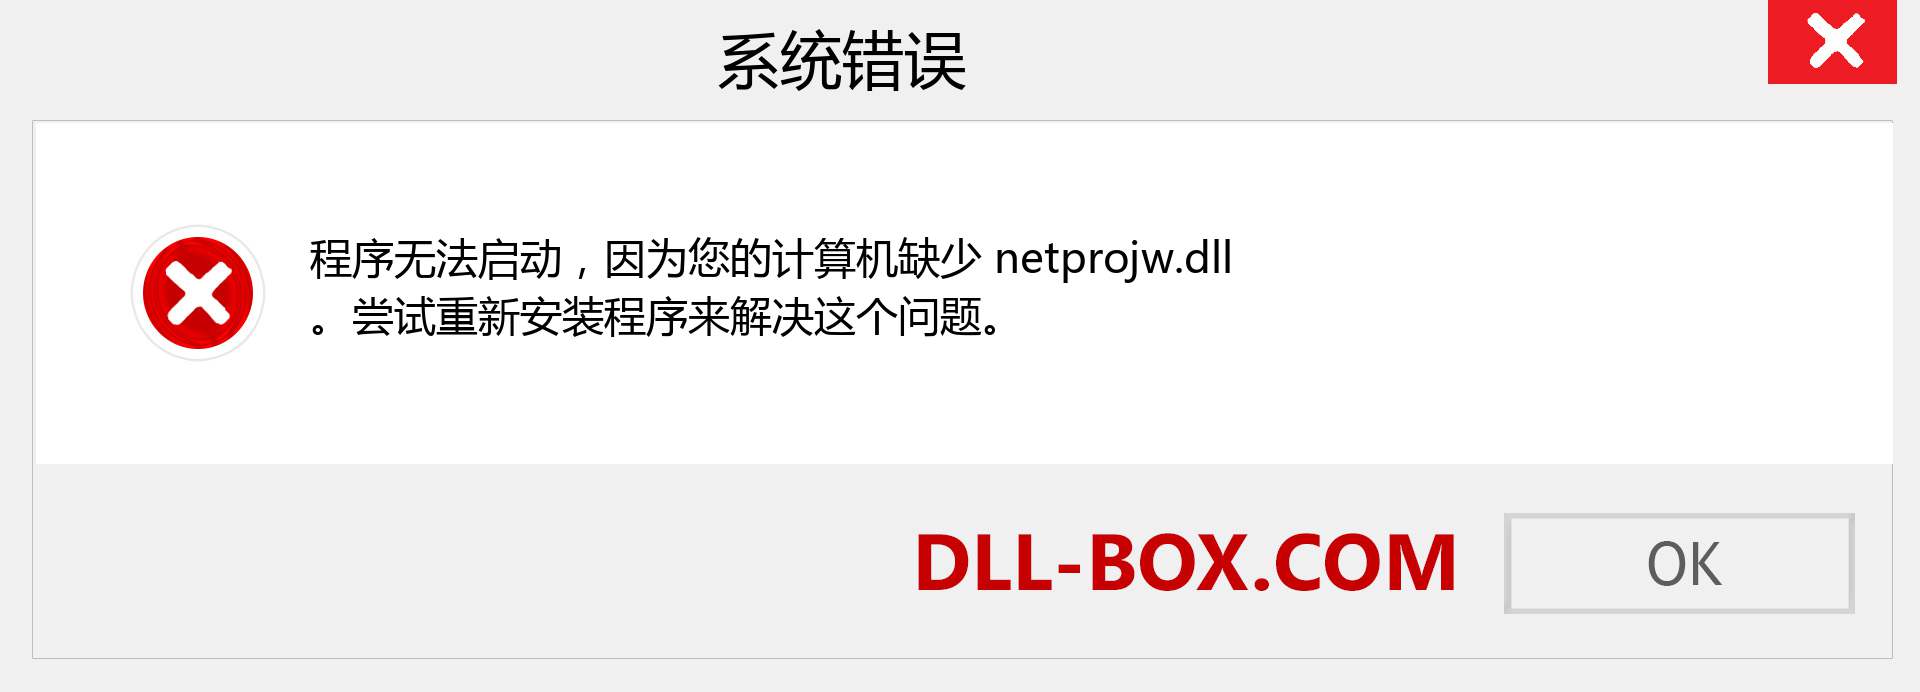 netprojw.dll 文件丢失？。 适用于 Windows 7、8、10 的下载 - 修复 Windows、照片、图像上的 netprojw dll 丢失错误